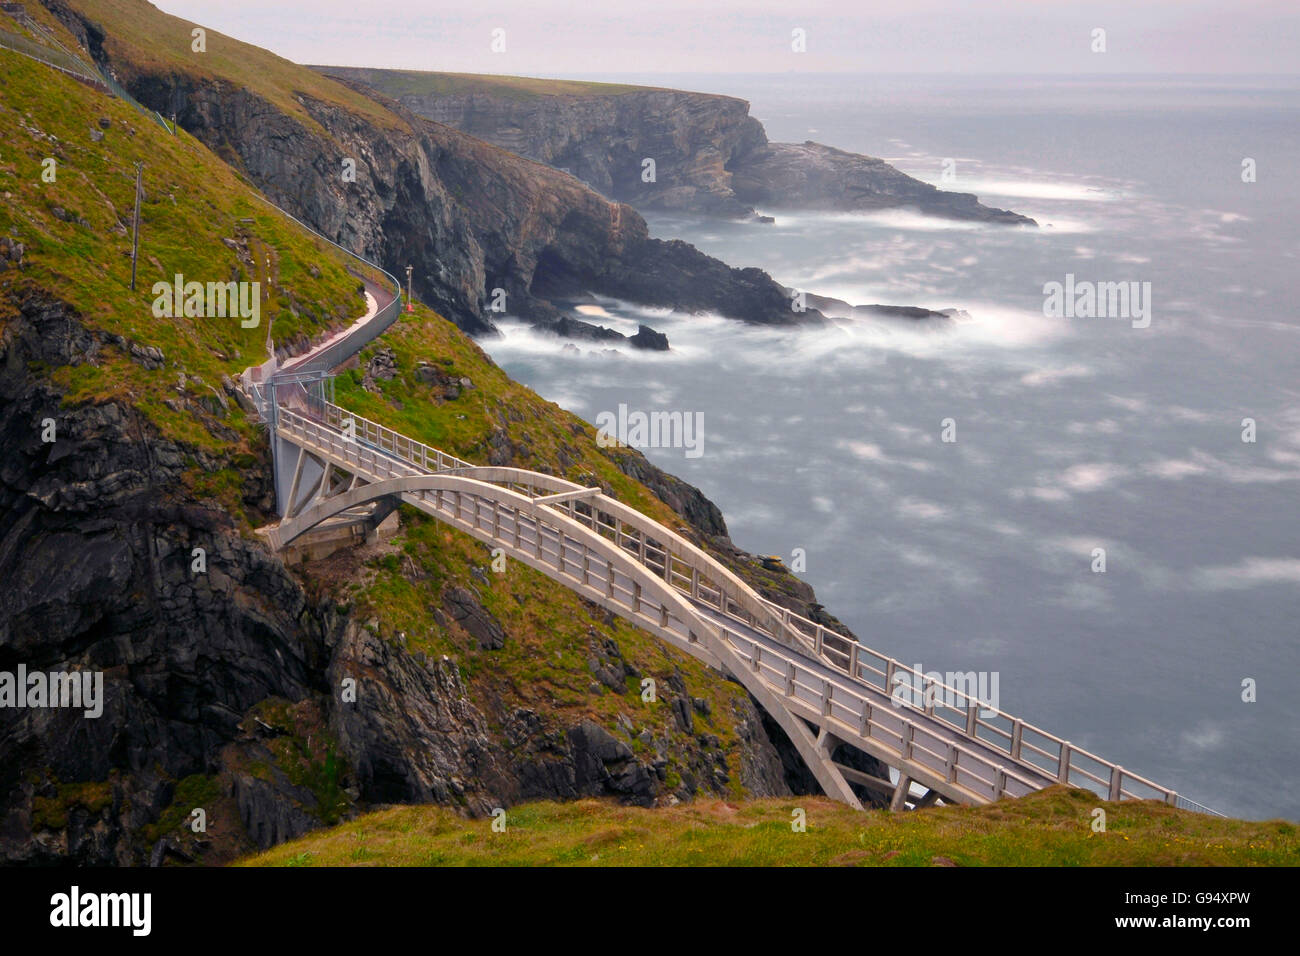 Mizen Head, Goleen, County Cork, Ireland / Mizen Bridge Stock Photo